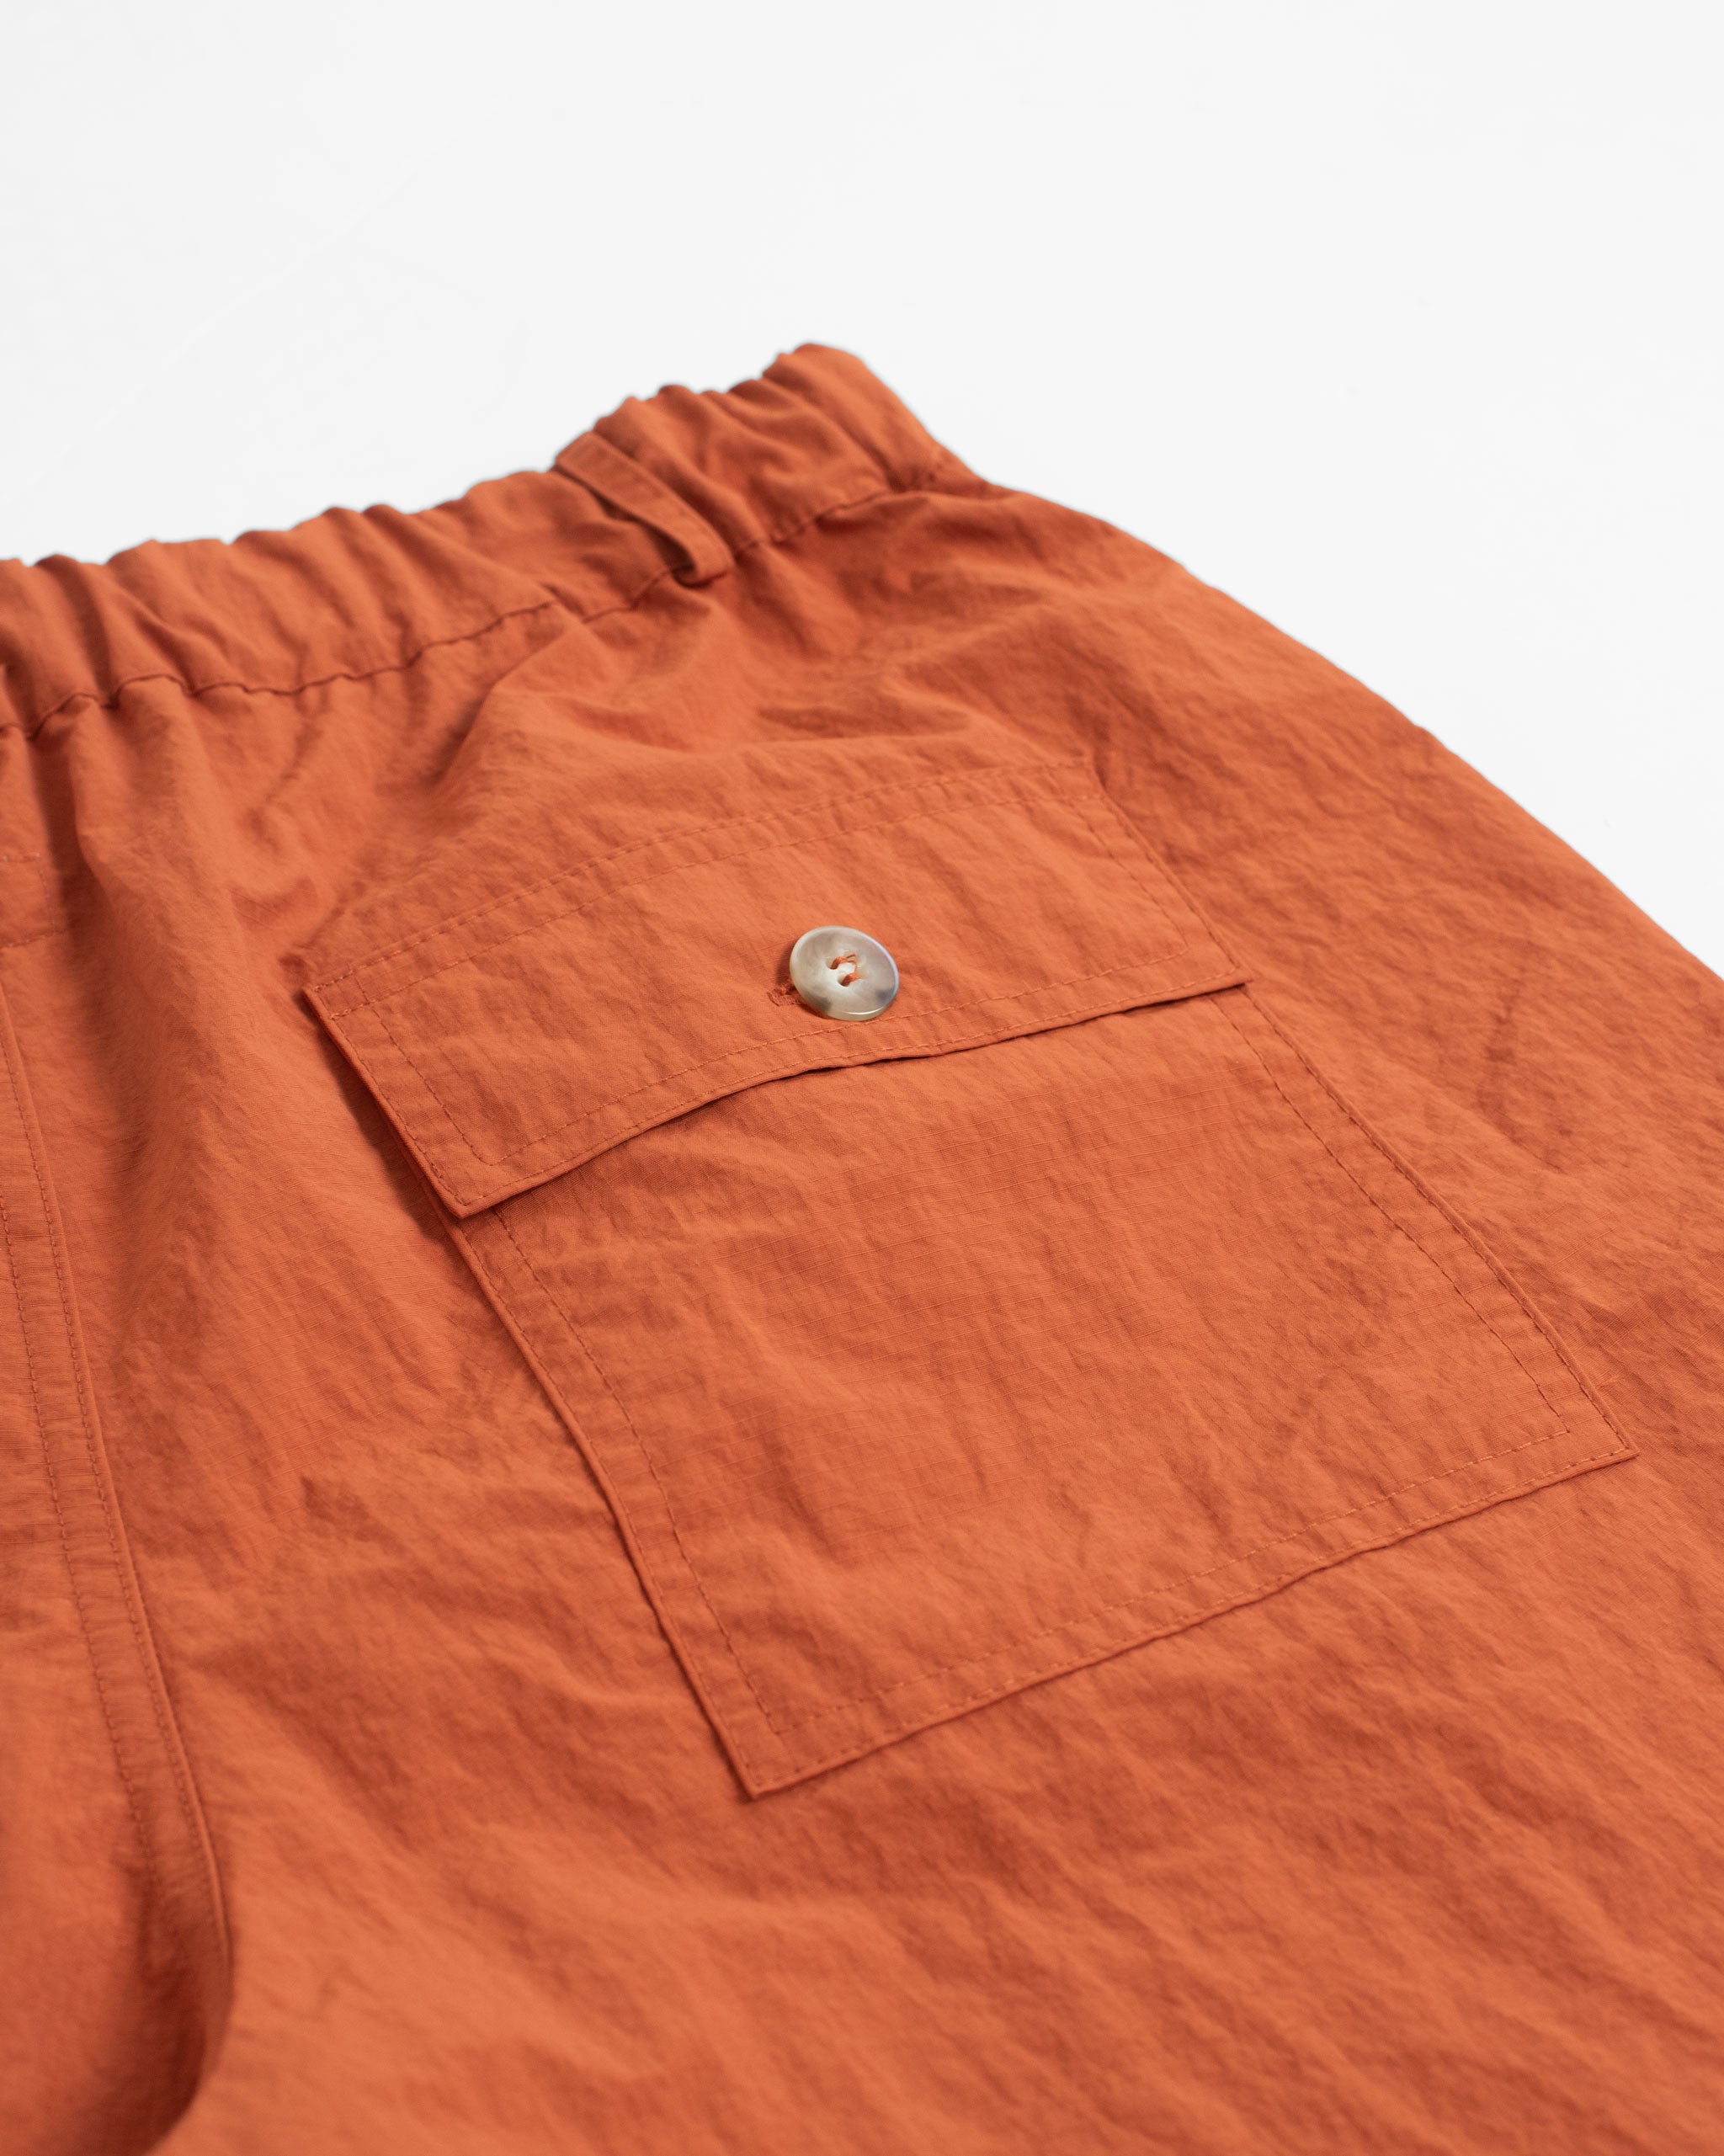 Solid Orange nylon utility with elasticized waist shorts back pocket close up